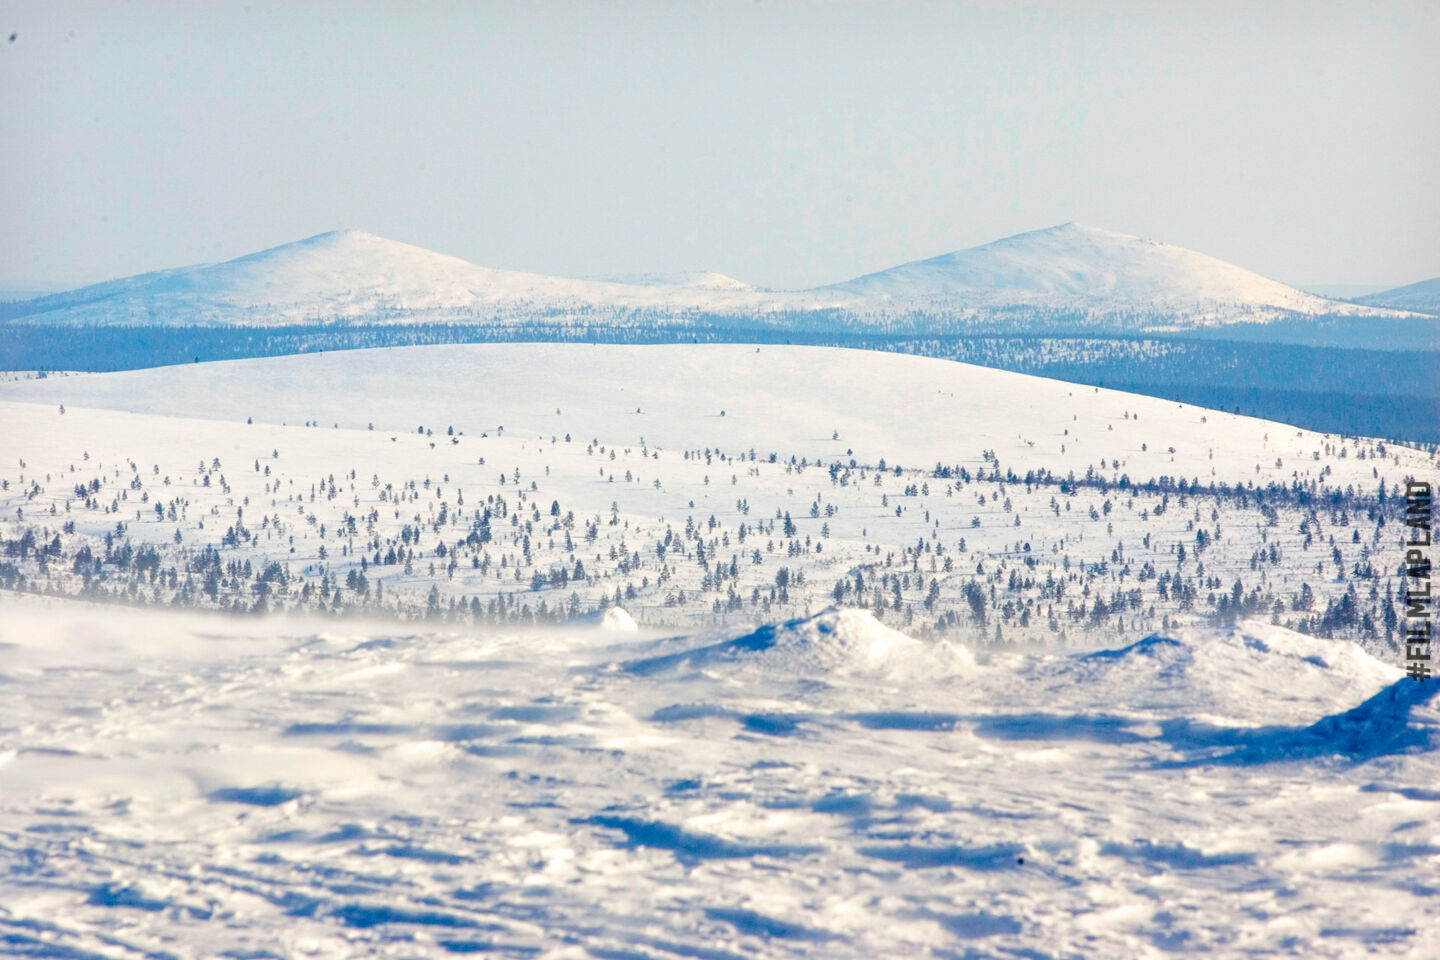 Peaks of Pyhä-Nattanen in Inari, a Finnish Lapland filming location